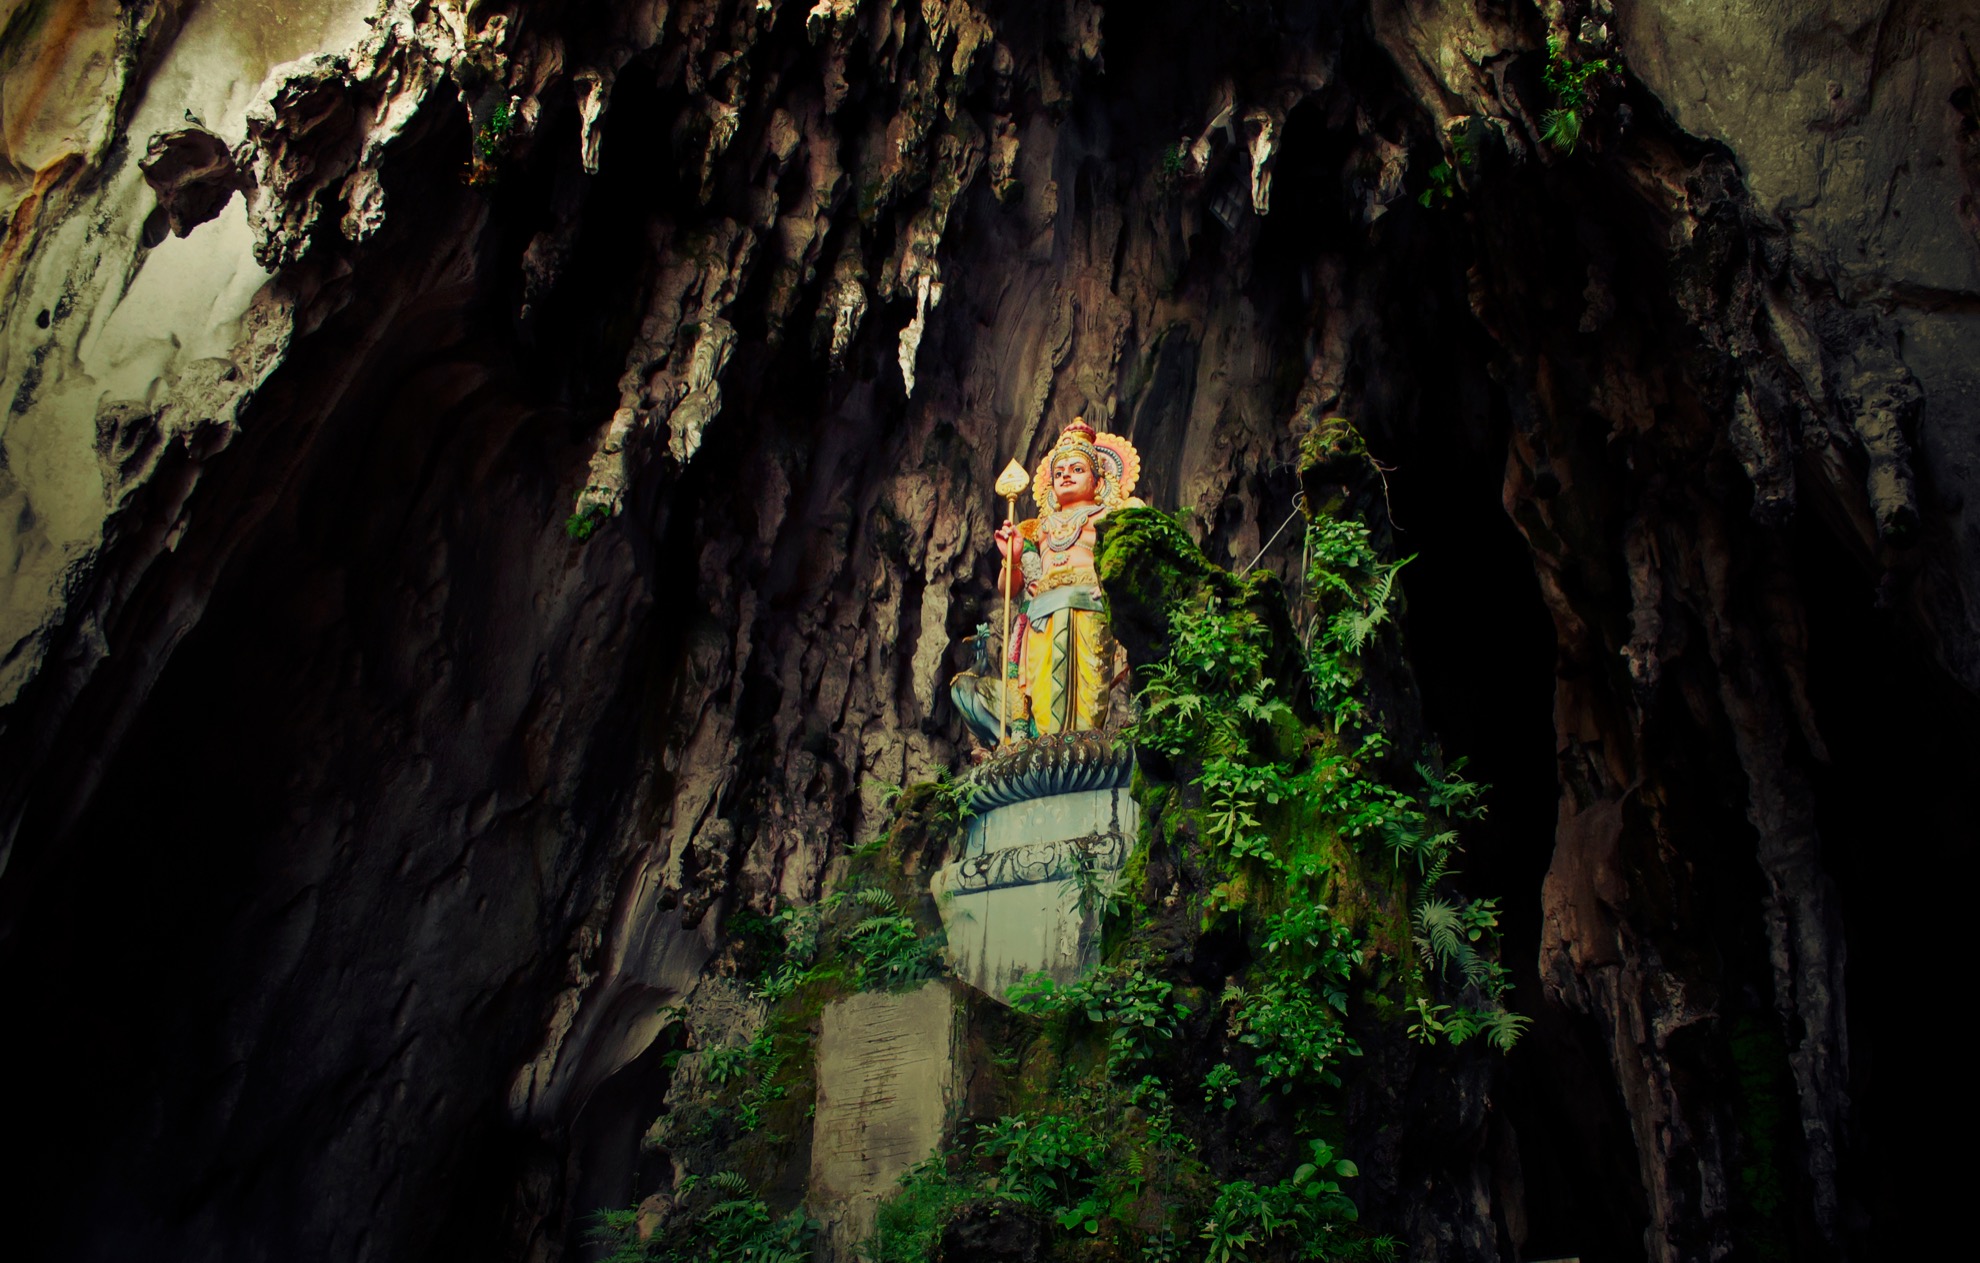 Las cuevas de Batu en Malasia podrían ser el lugar más colorido que hayas visitado - 19